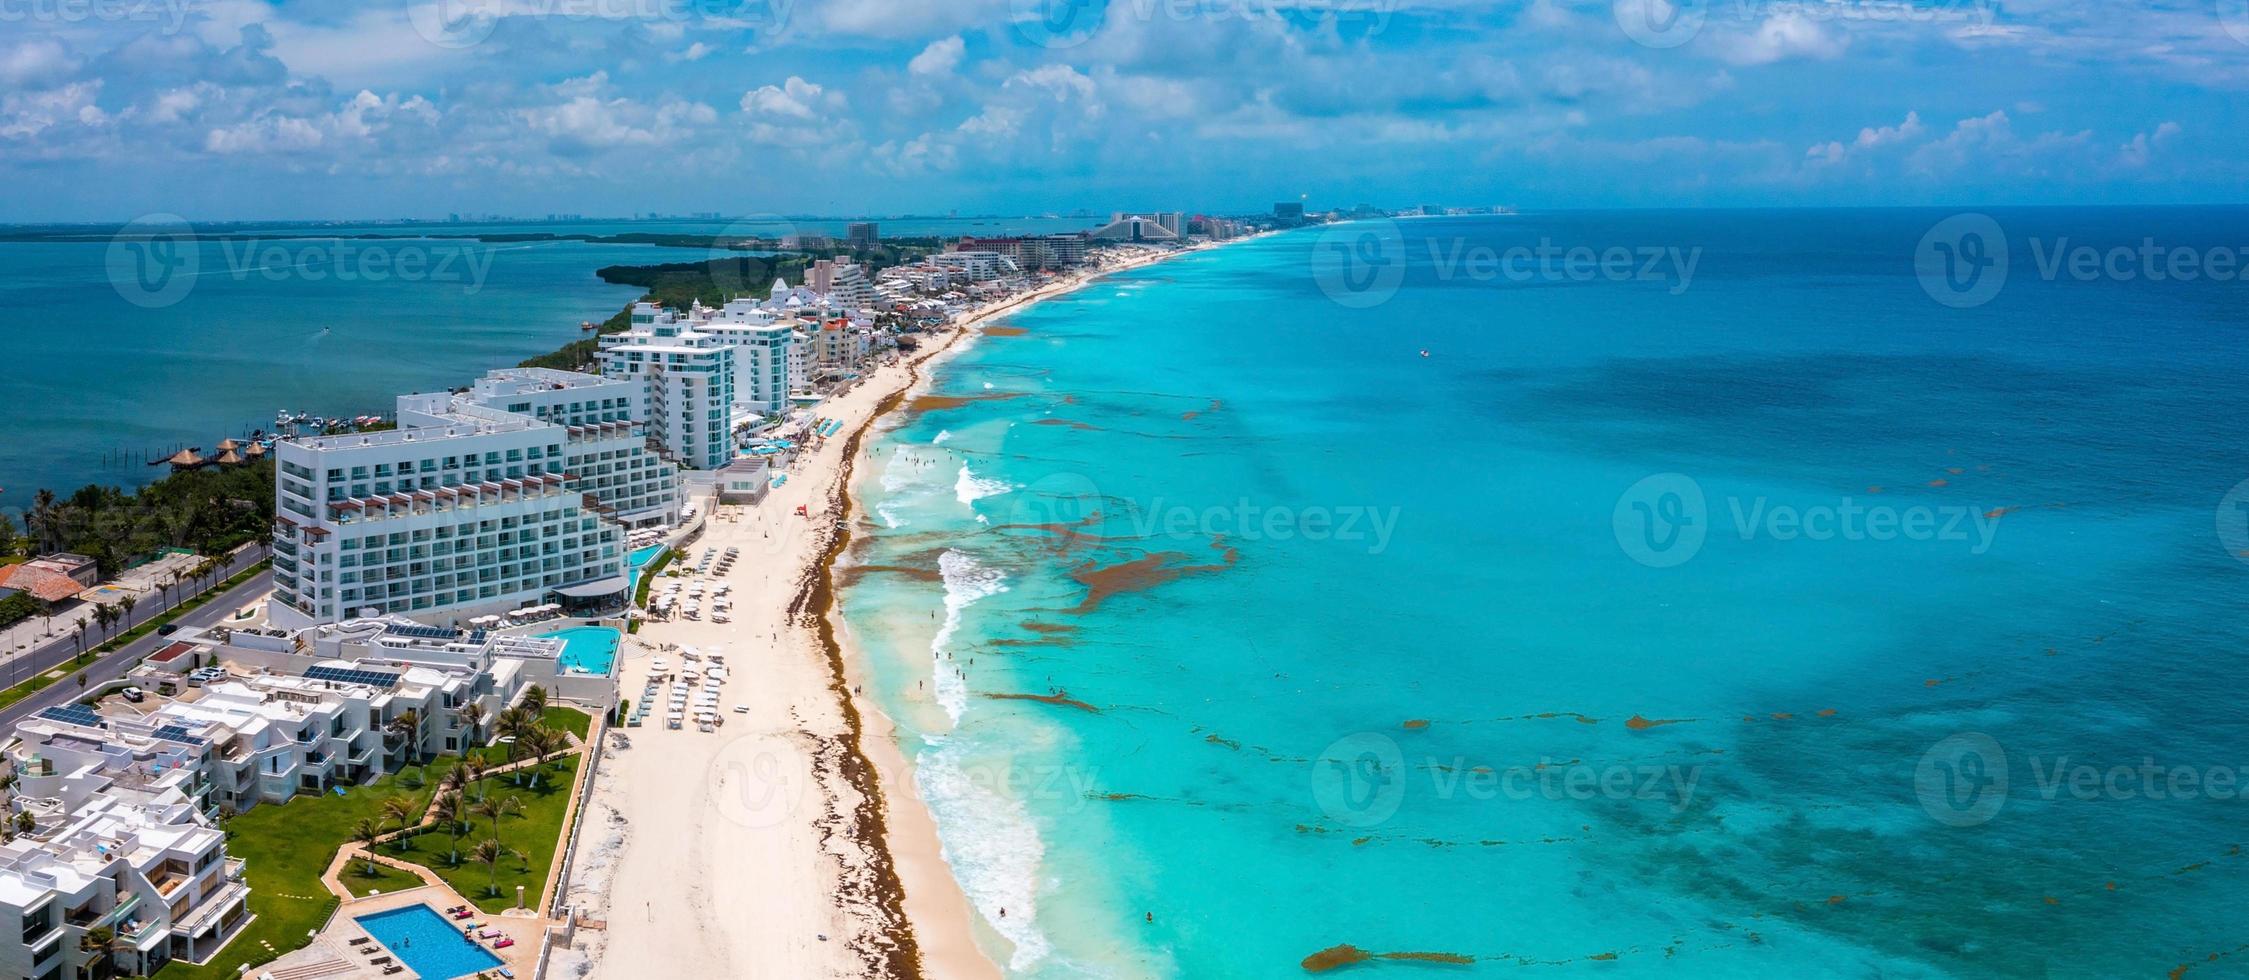 vliegen over het prachtige strand van Cancun. foto